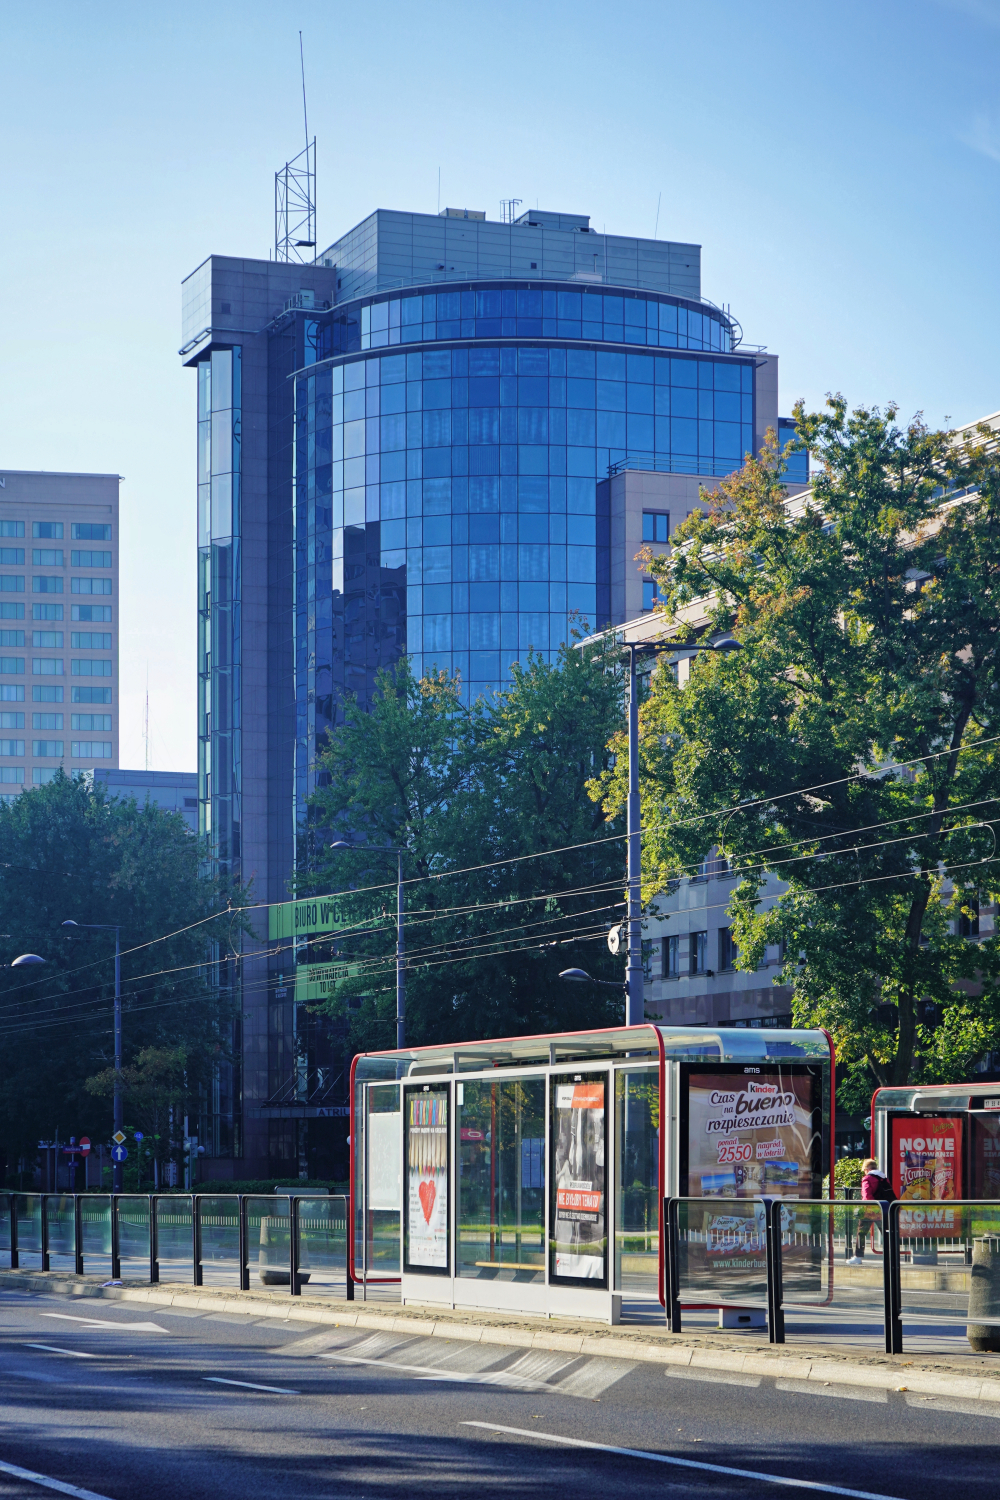 Zdjęcie architektury budynku Atrium Tower (Atrium Business Center)